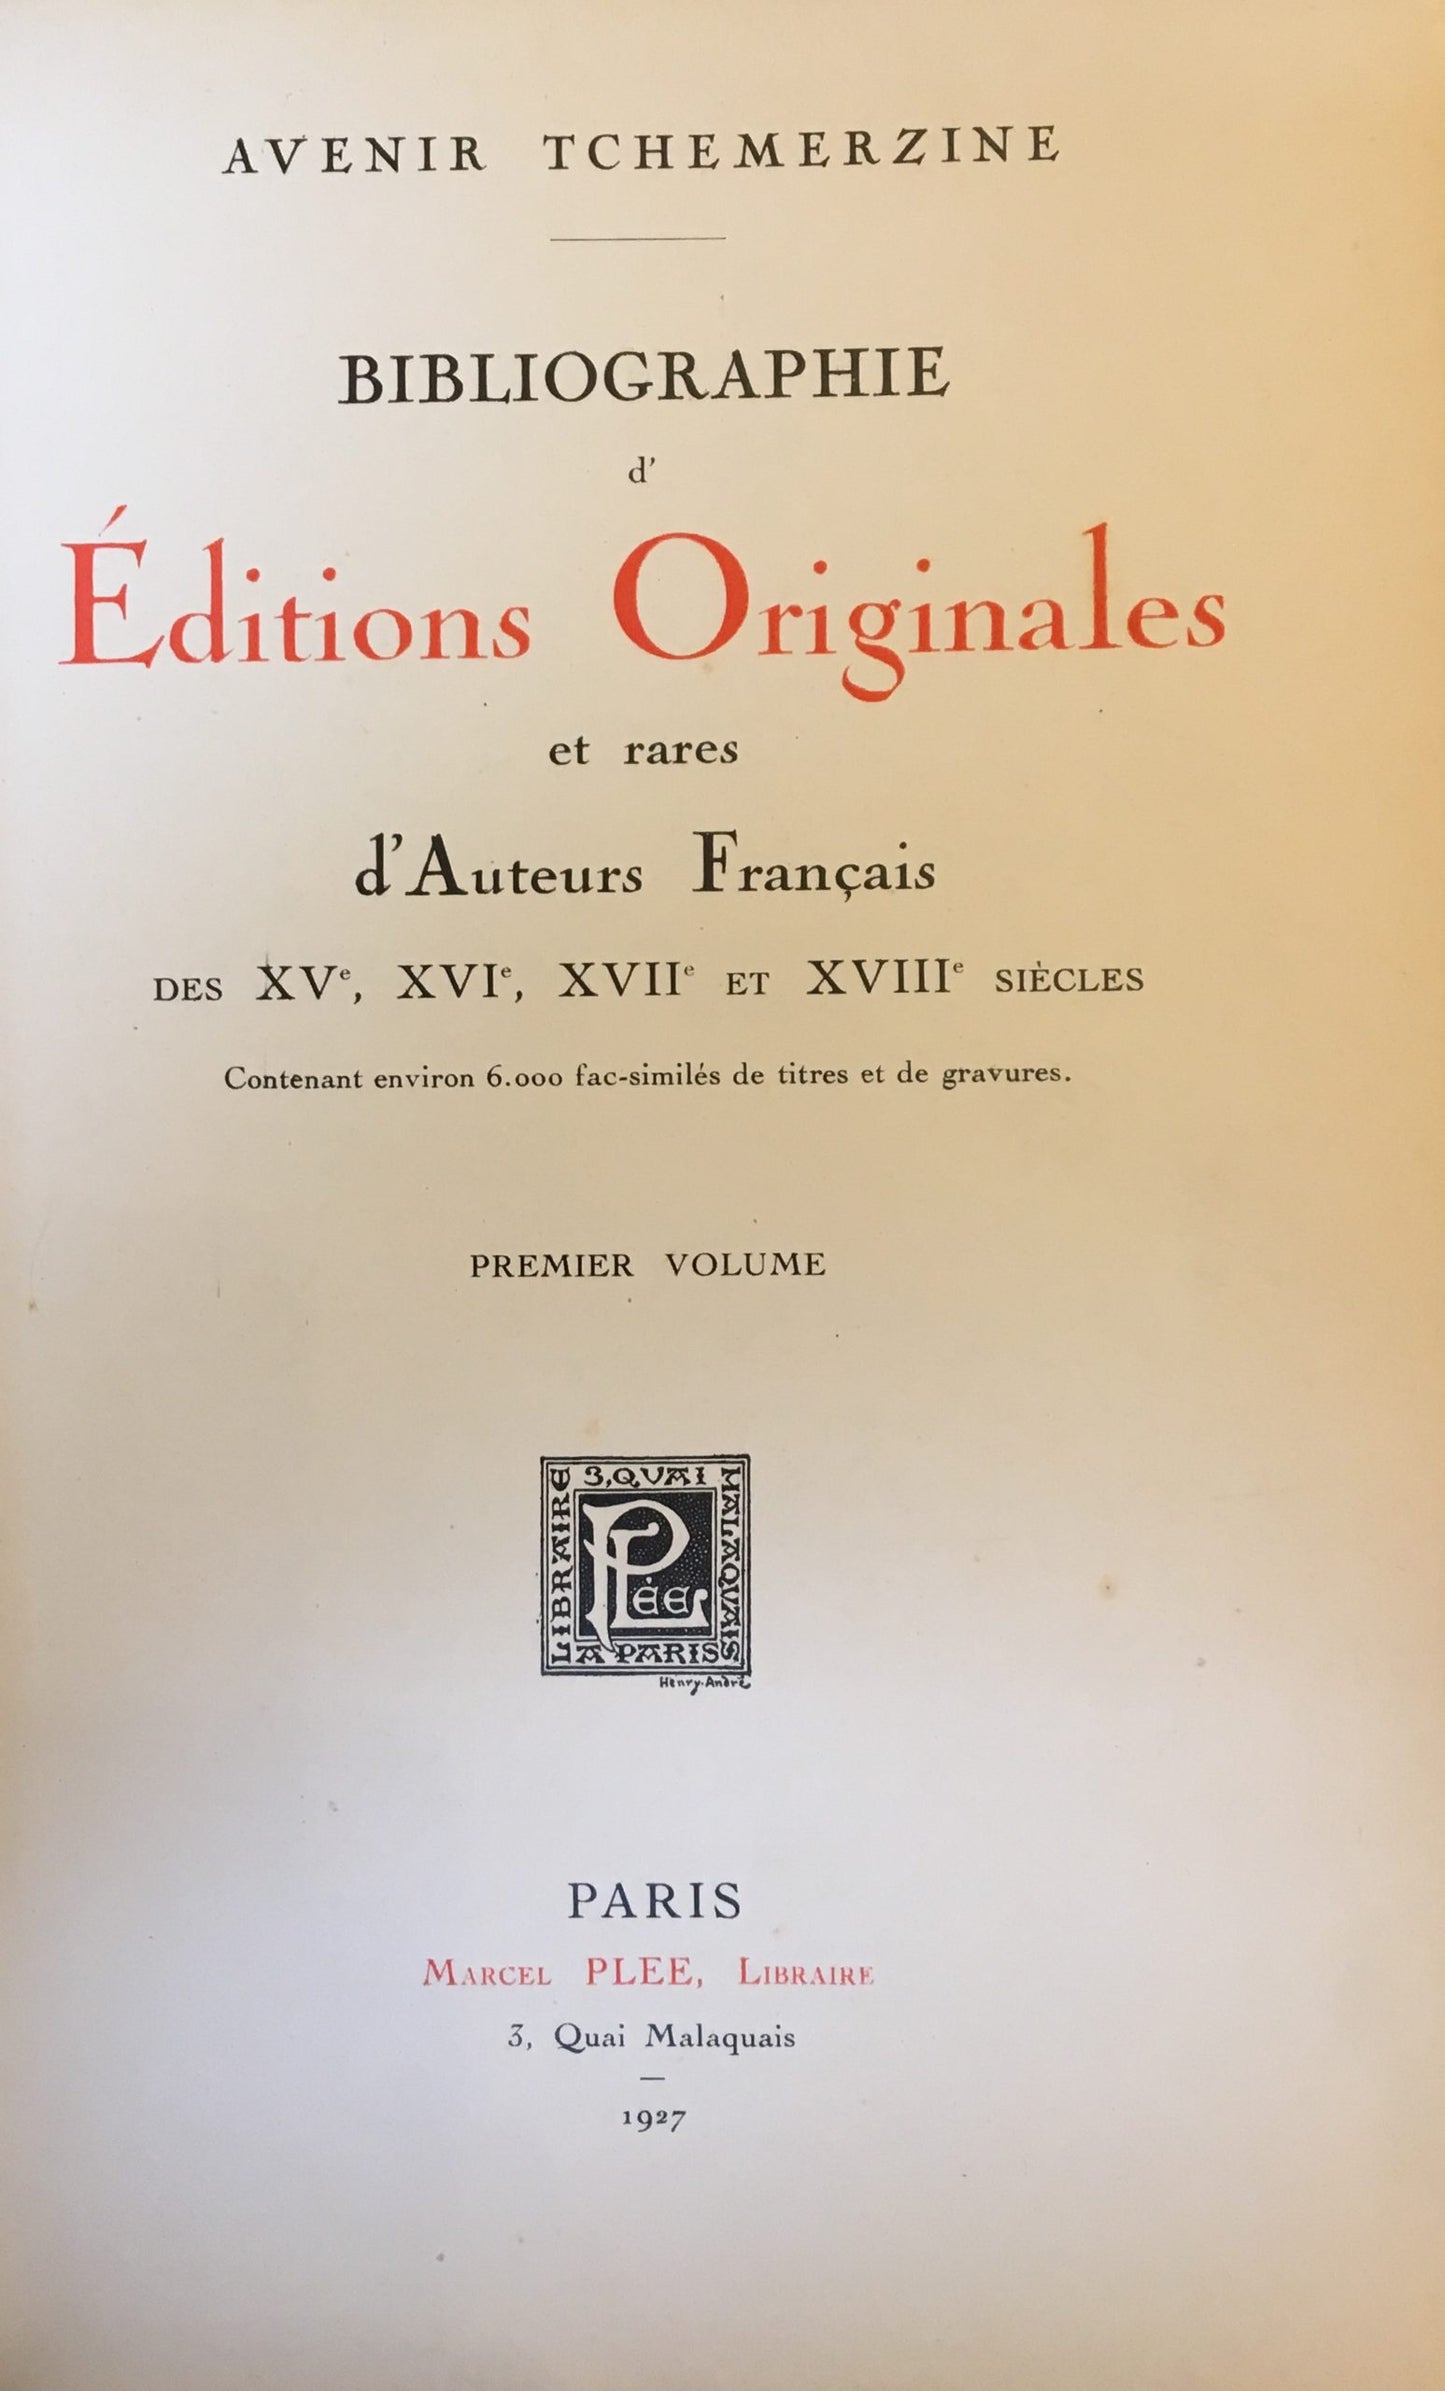 Bibliographie d' éditions originales et rares d'auteurs Francais (XV, XVI, XVII et XVIII siècles)